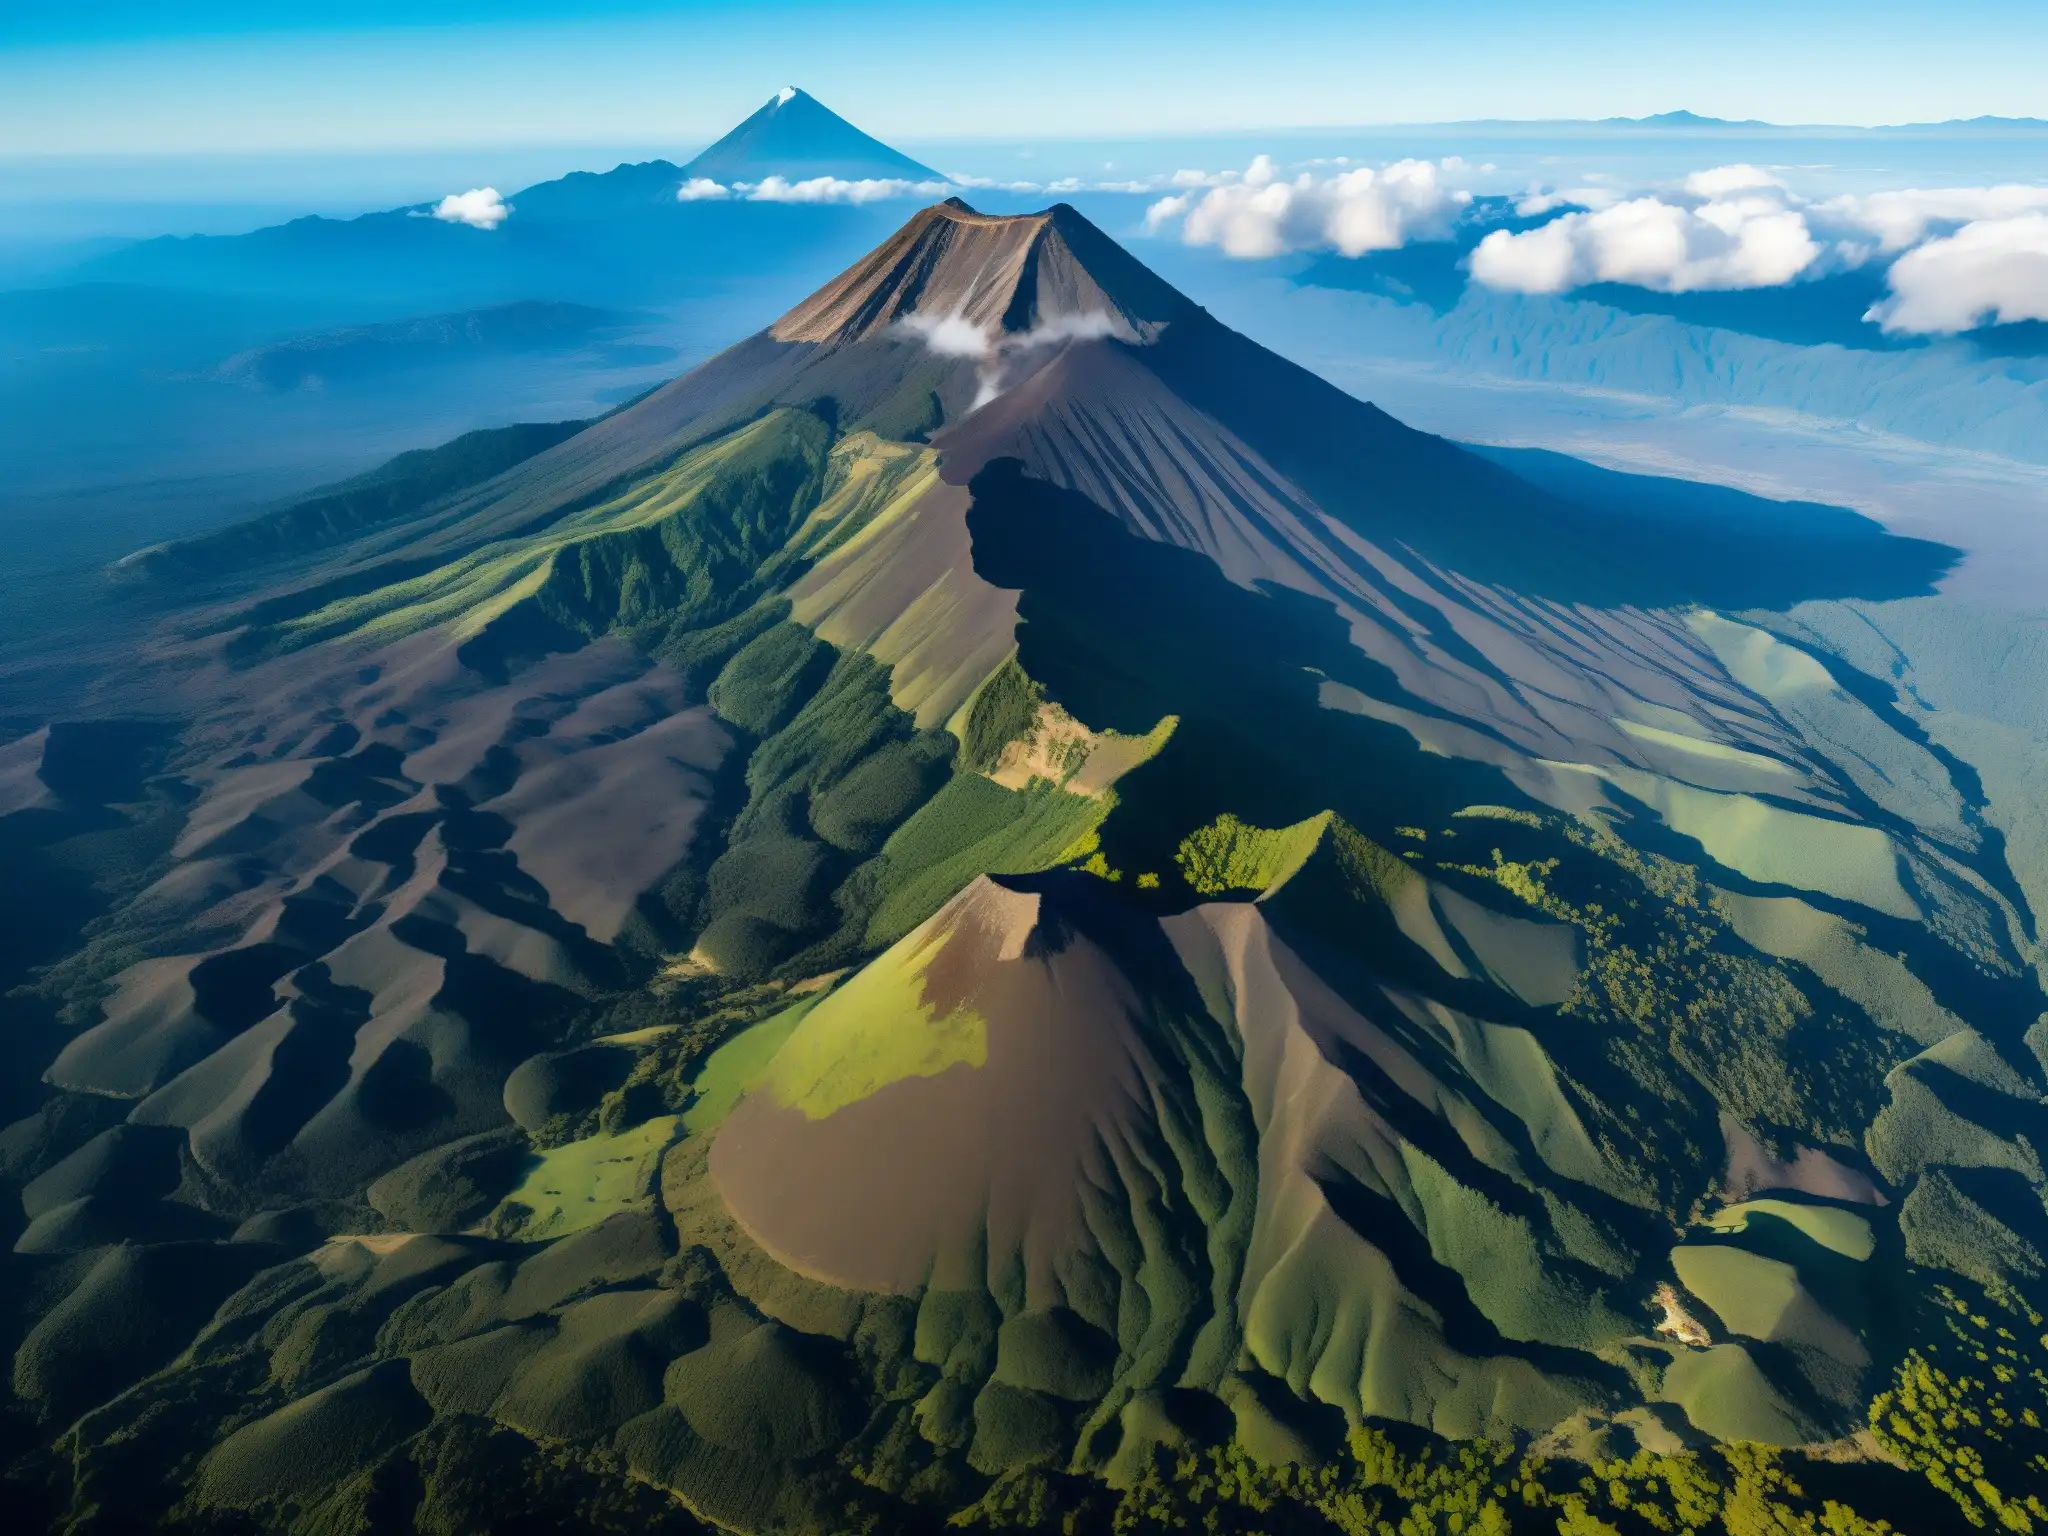 Imponente vista aérea del majestuoso Volcán de la Malinche, con sus pendientes escarpadas y exuberante vegetación, bajo cielos azules